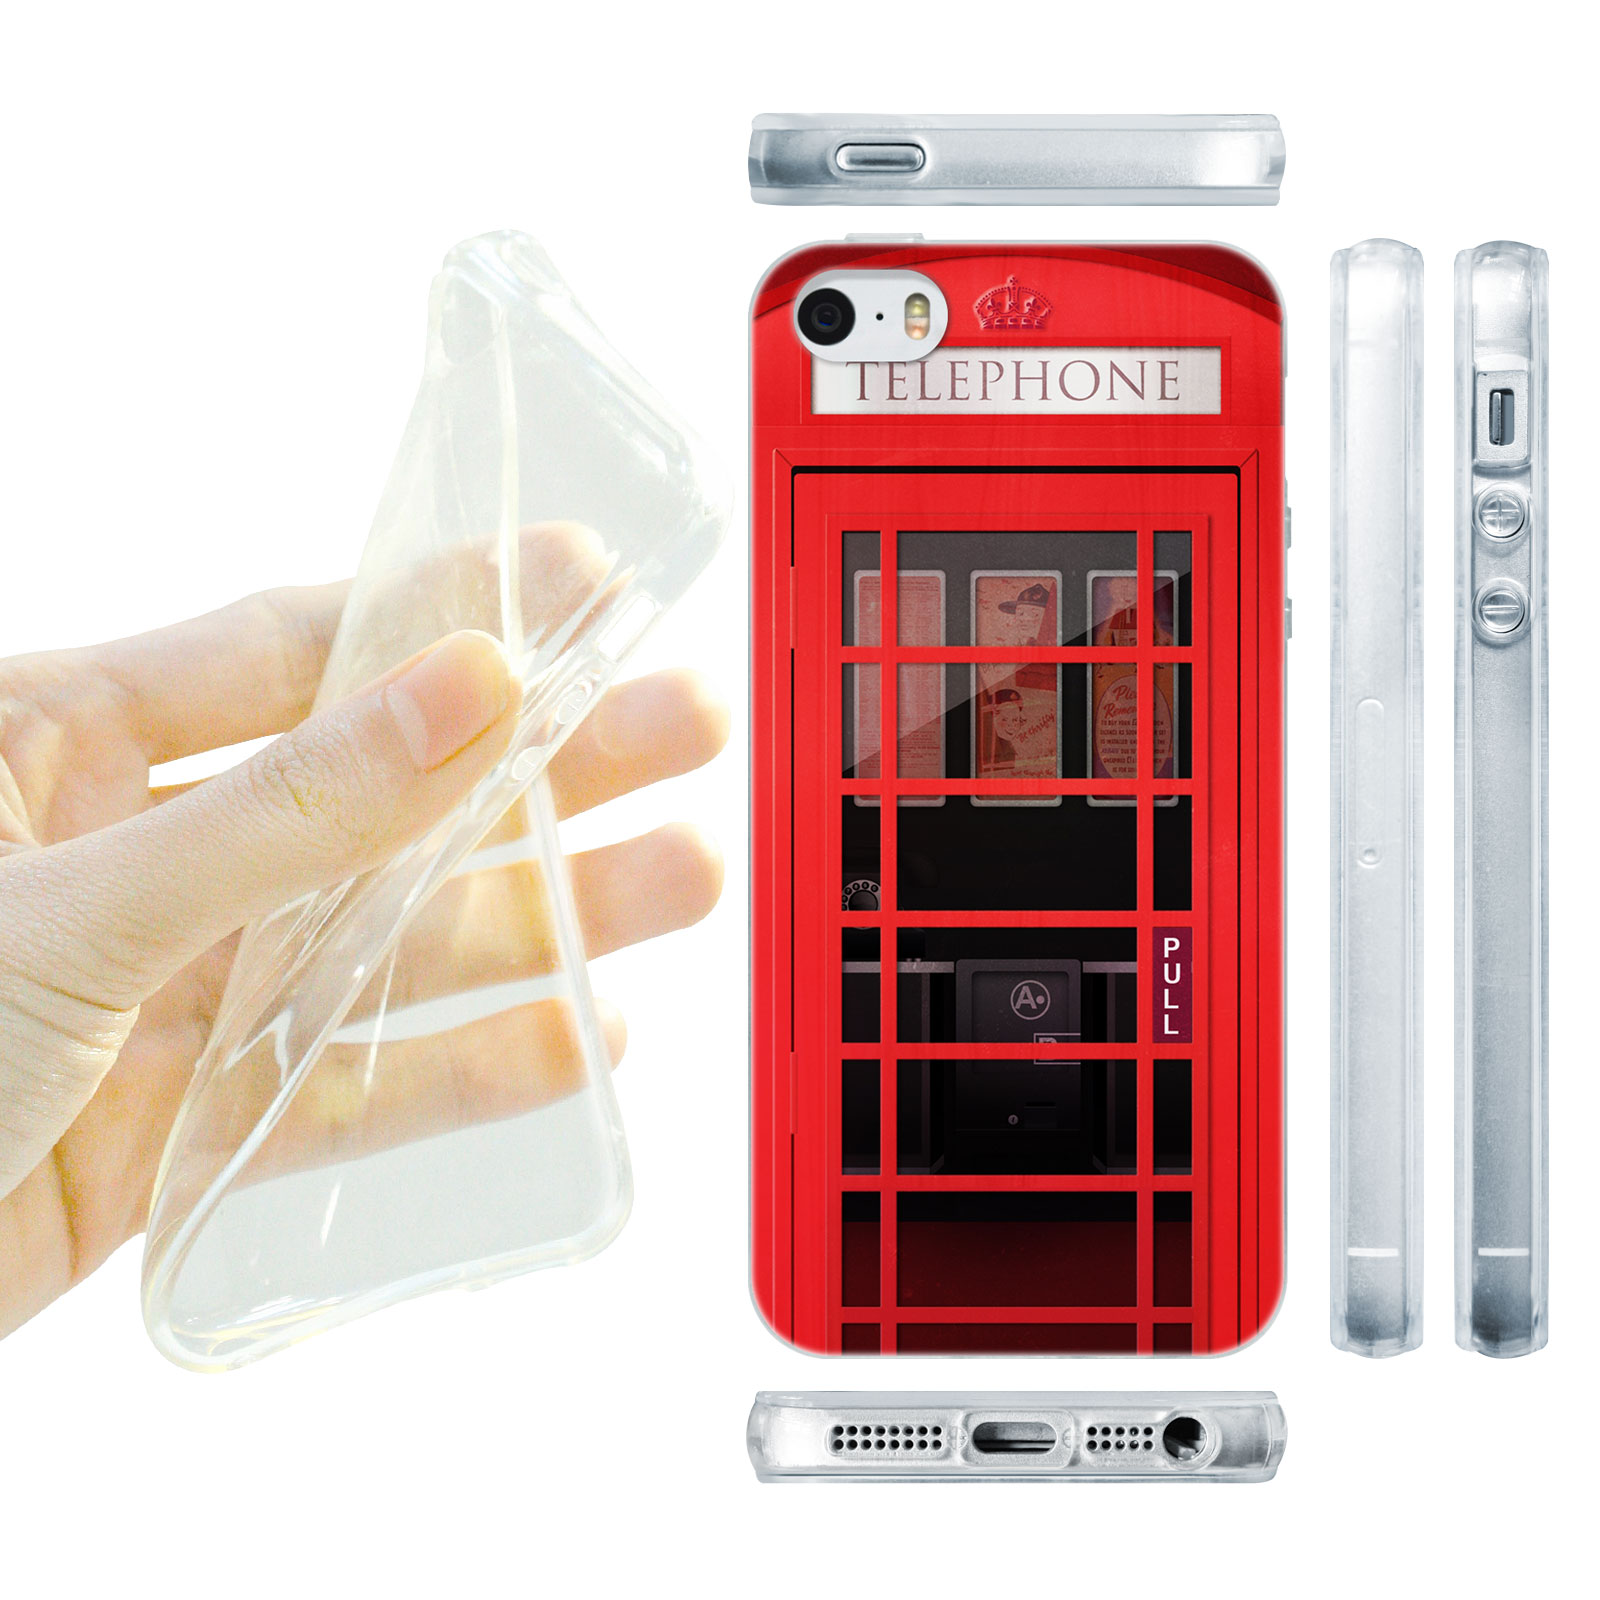 HEAD CASE silikonový obal na mobil Iphone 5/5S telefonní budka červená barva